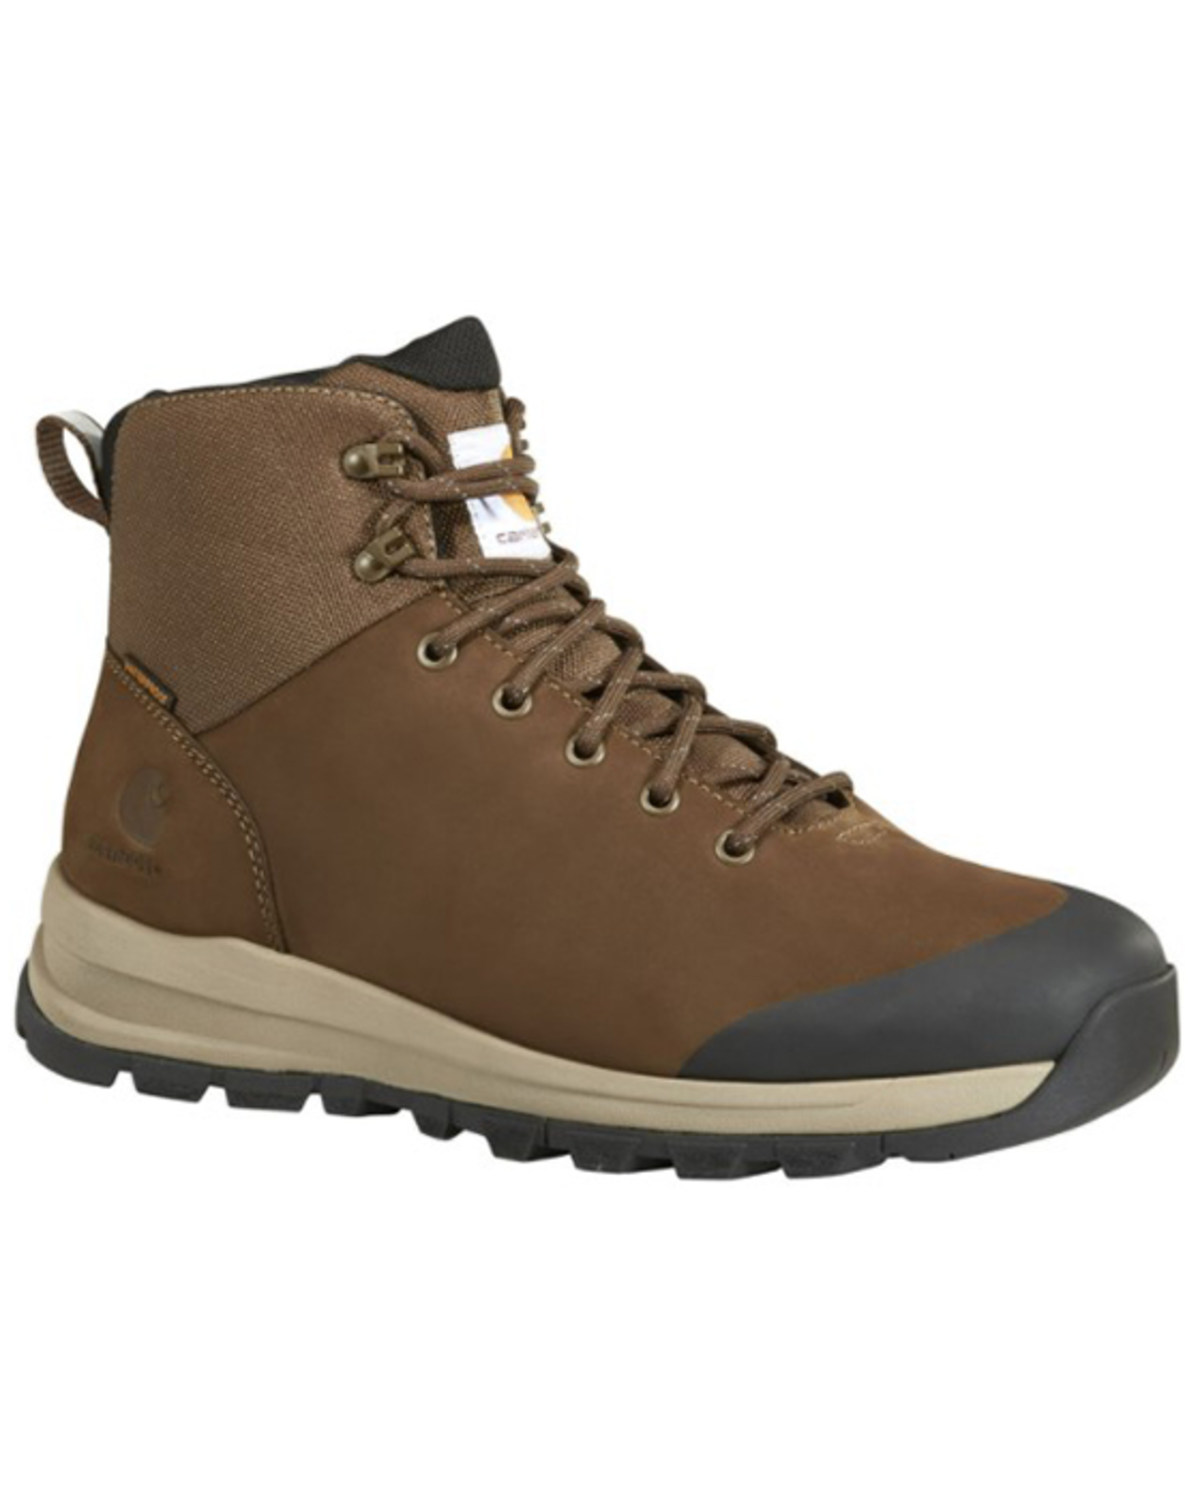 Carhartt Men's Outdoor Waterproof 5" Soft Toe Hiking Work Boot